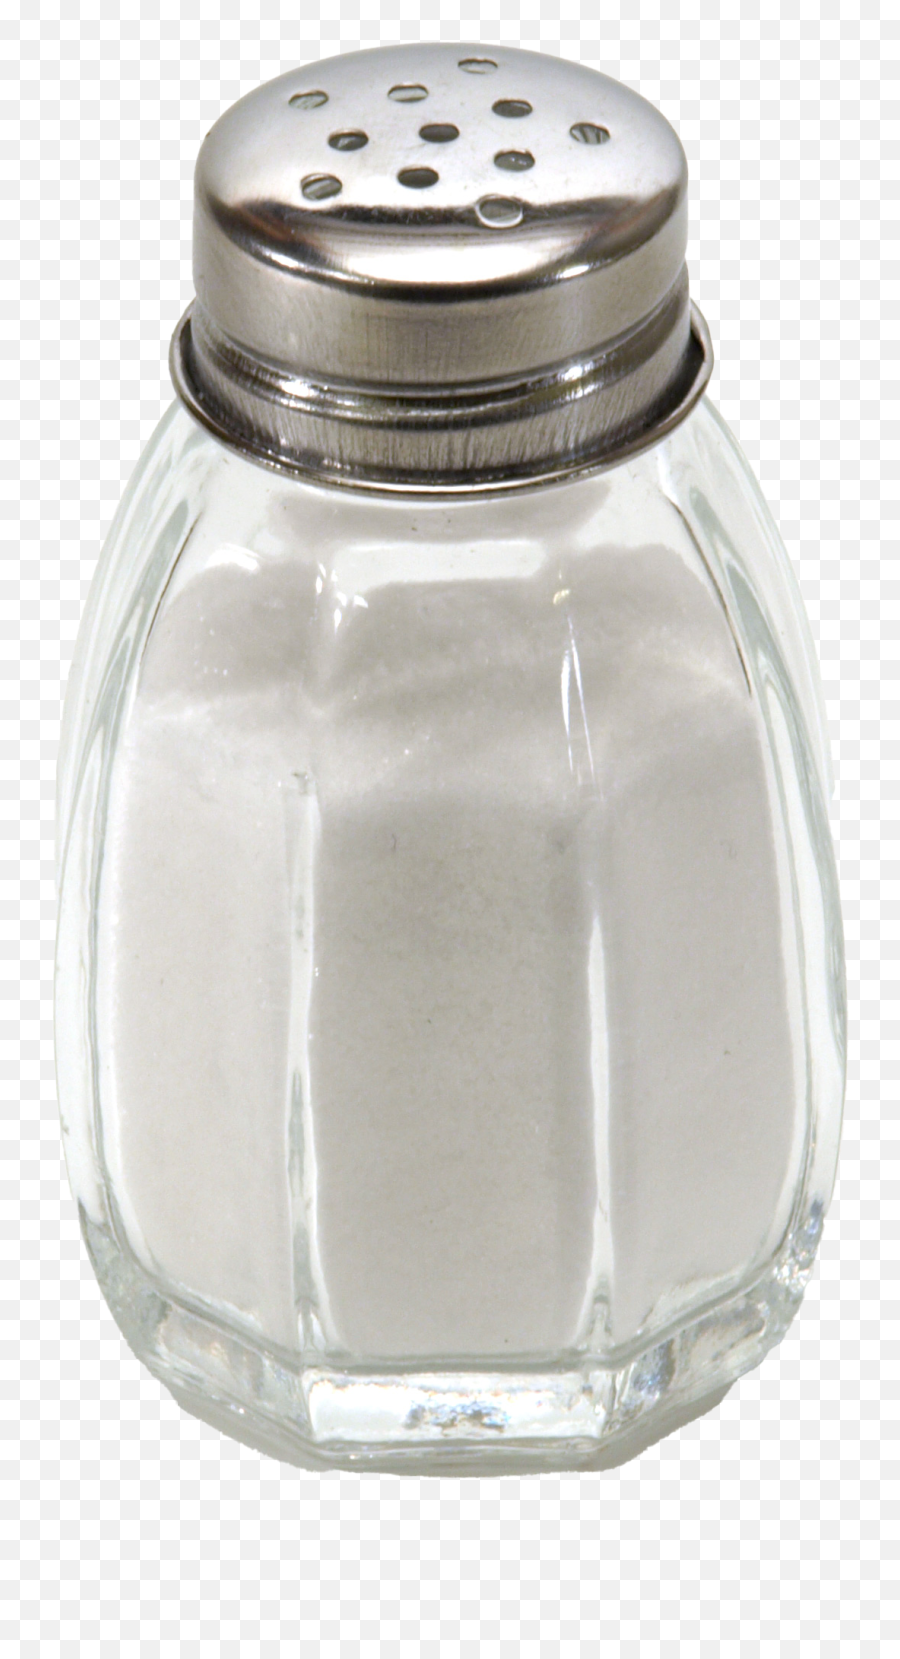 Salt Png Images Hd Play - Salt Glass Container,Salt Shaker Transparent Background